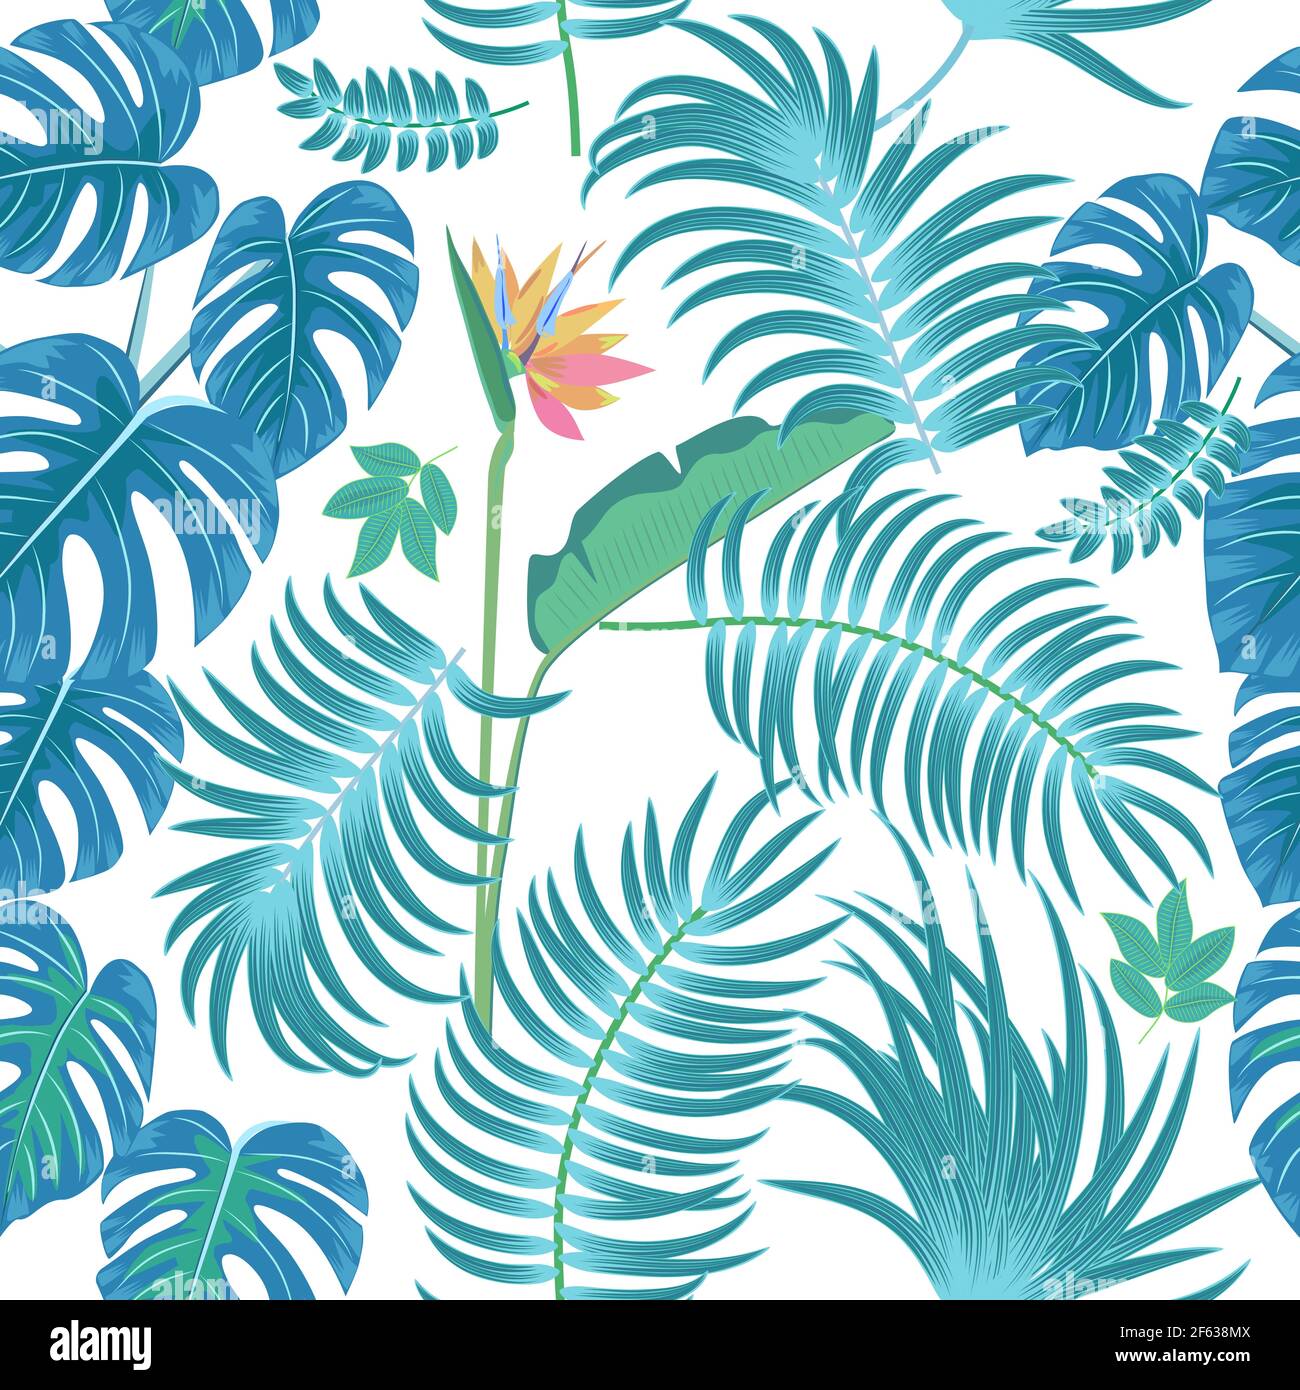 Modello vettoriale tropicale senza giunture con foglie di palma e fiori. Sfondo chiaro botanica, carta da parati giungla. Illustrazione Vettoriale